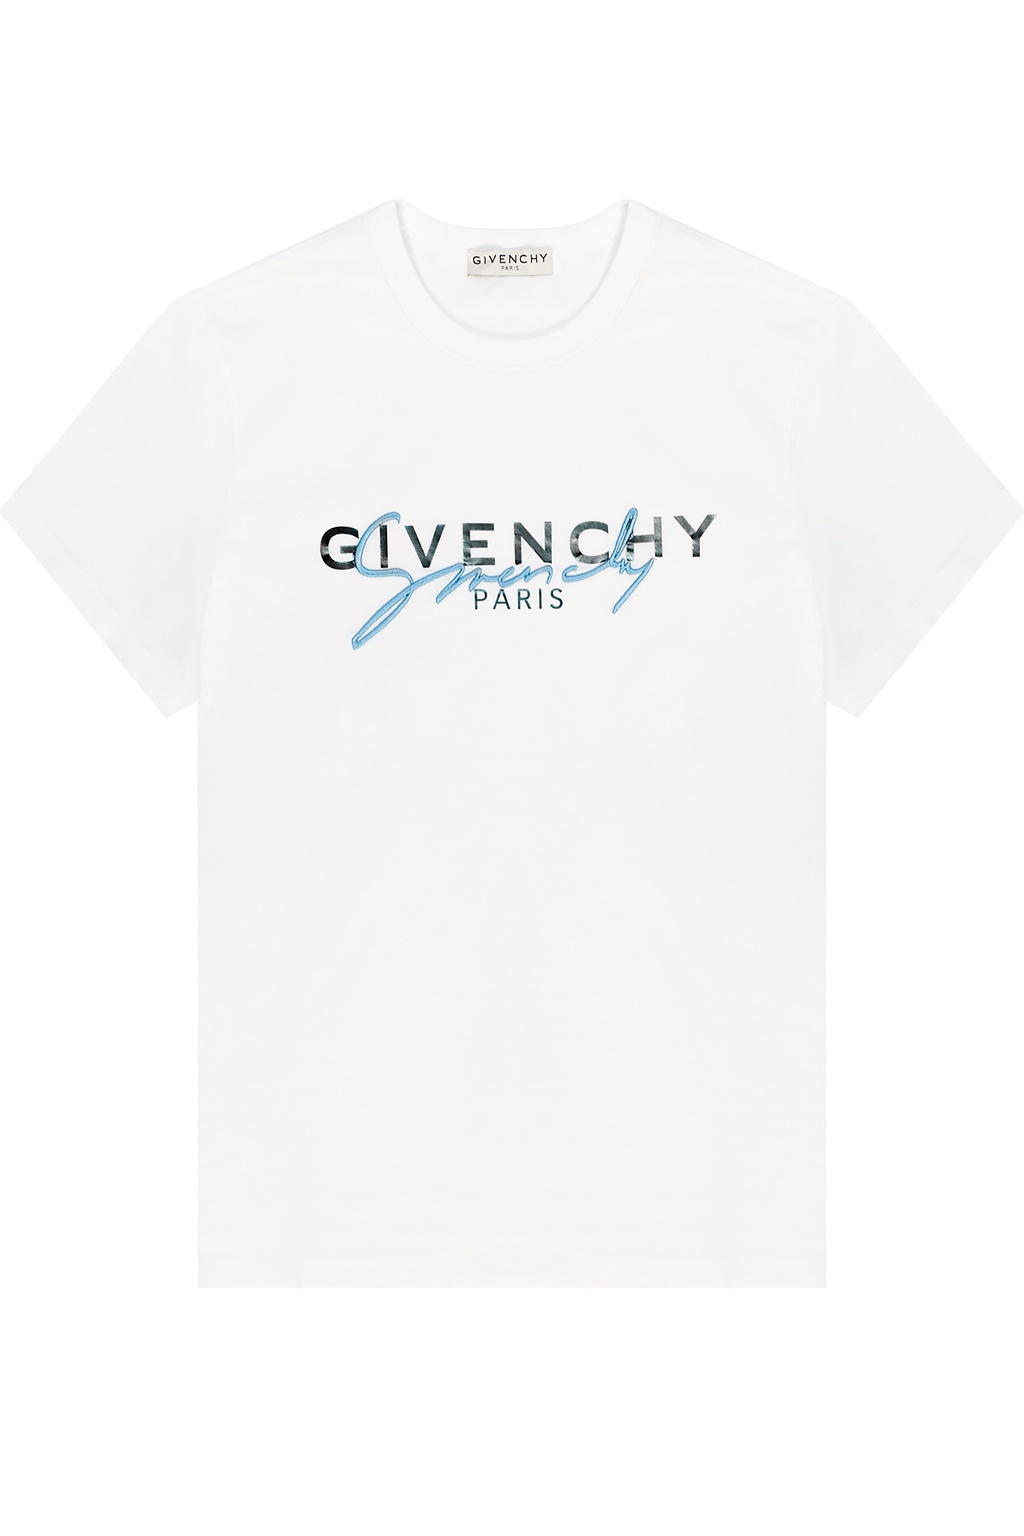 givenchy logo shirt